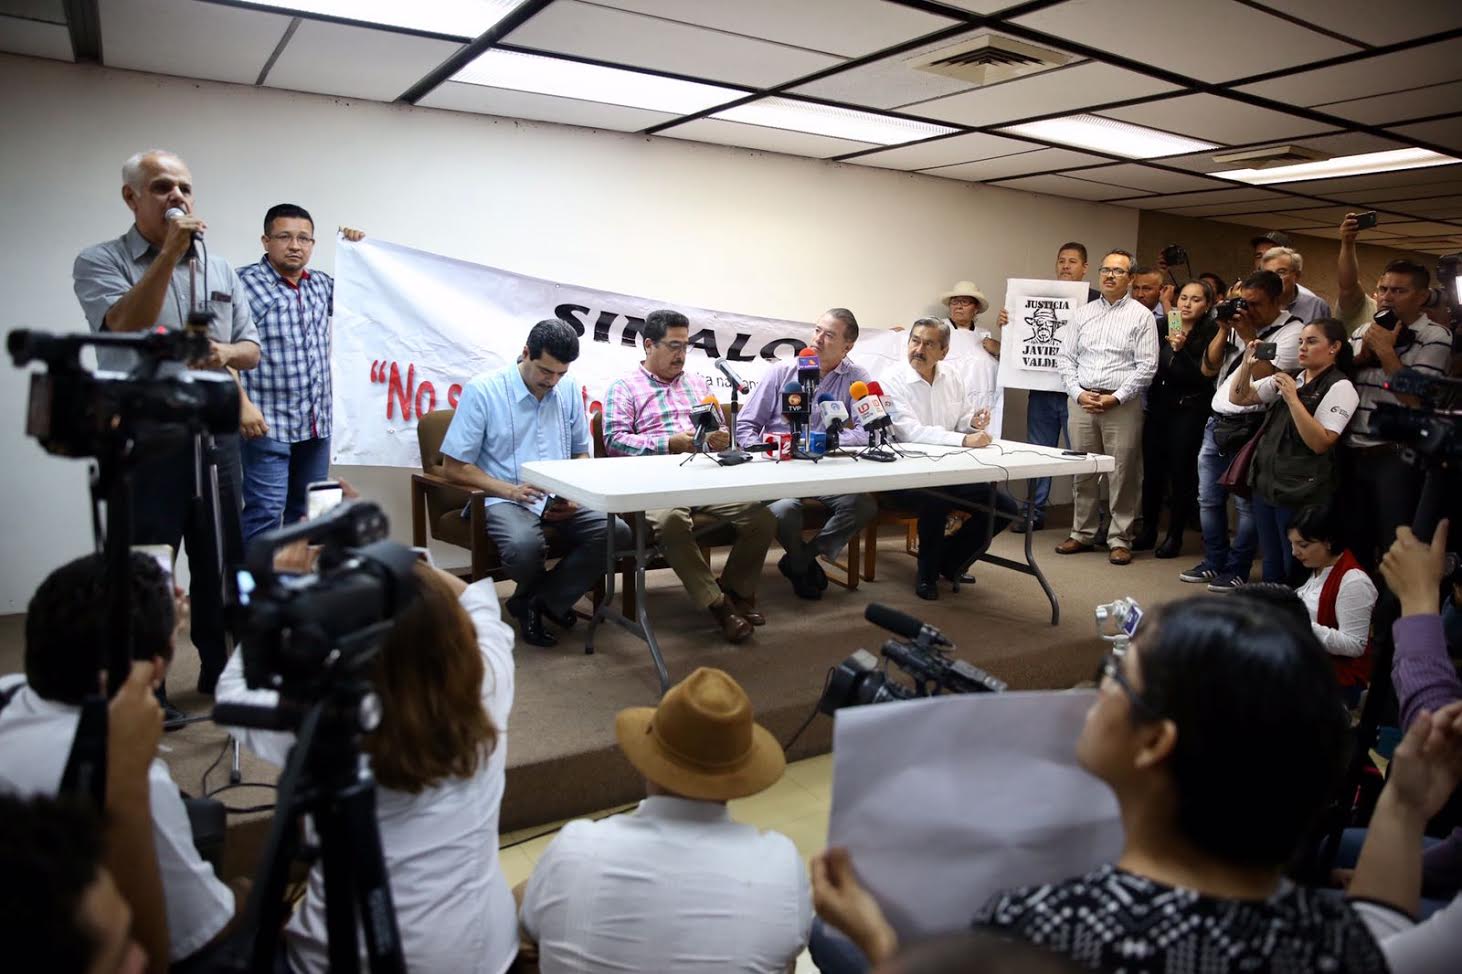 El gobernador de Sinaloa sostuvo un diálogo abierto con periodistas y representantes sociales. (Gobierno de Sinaloa)